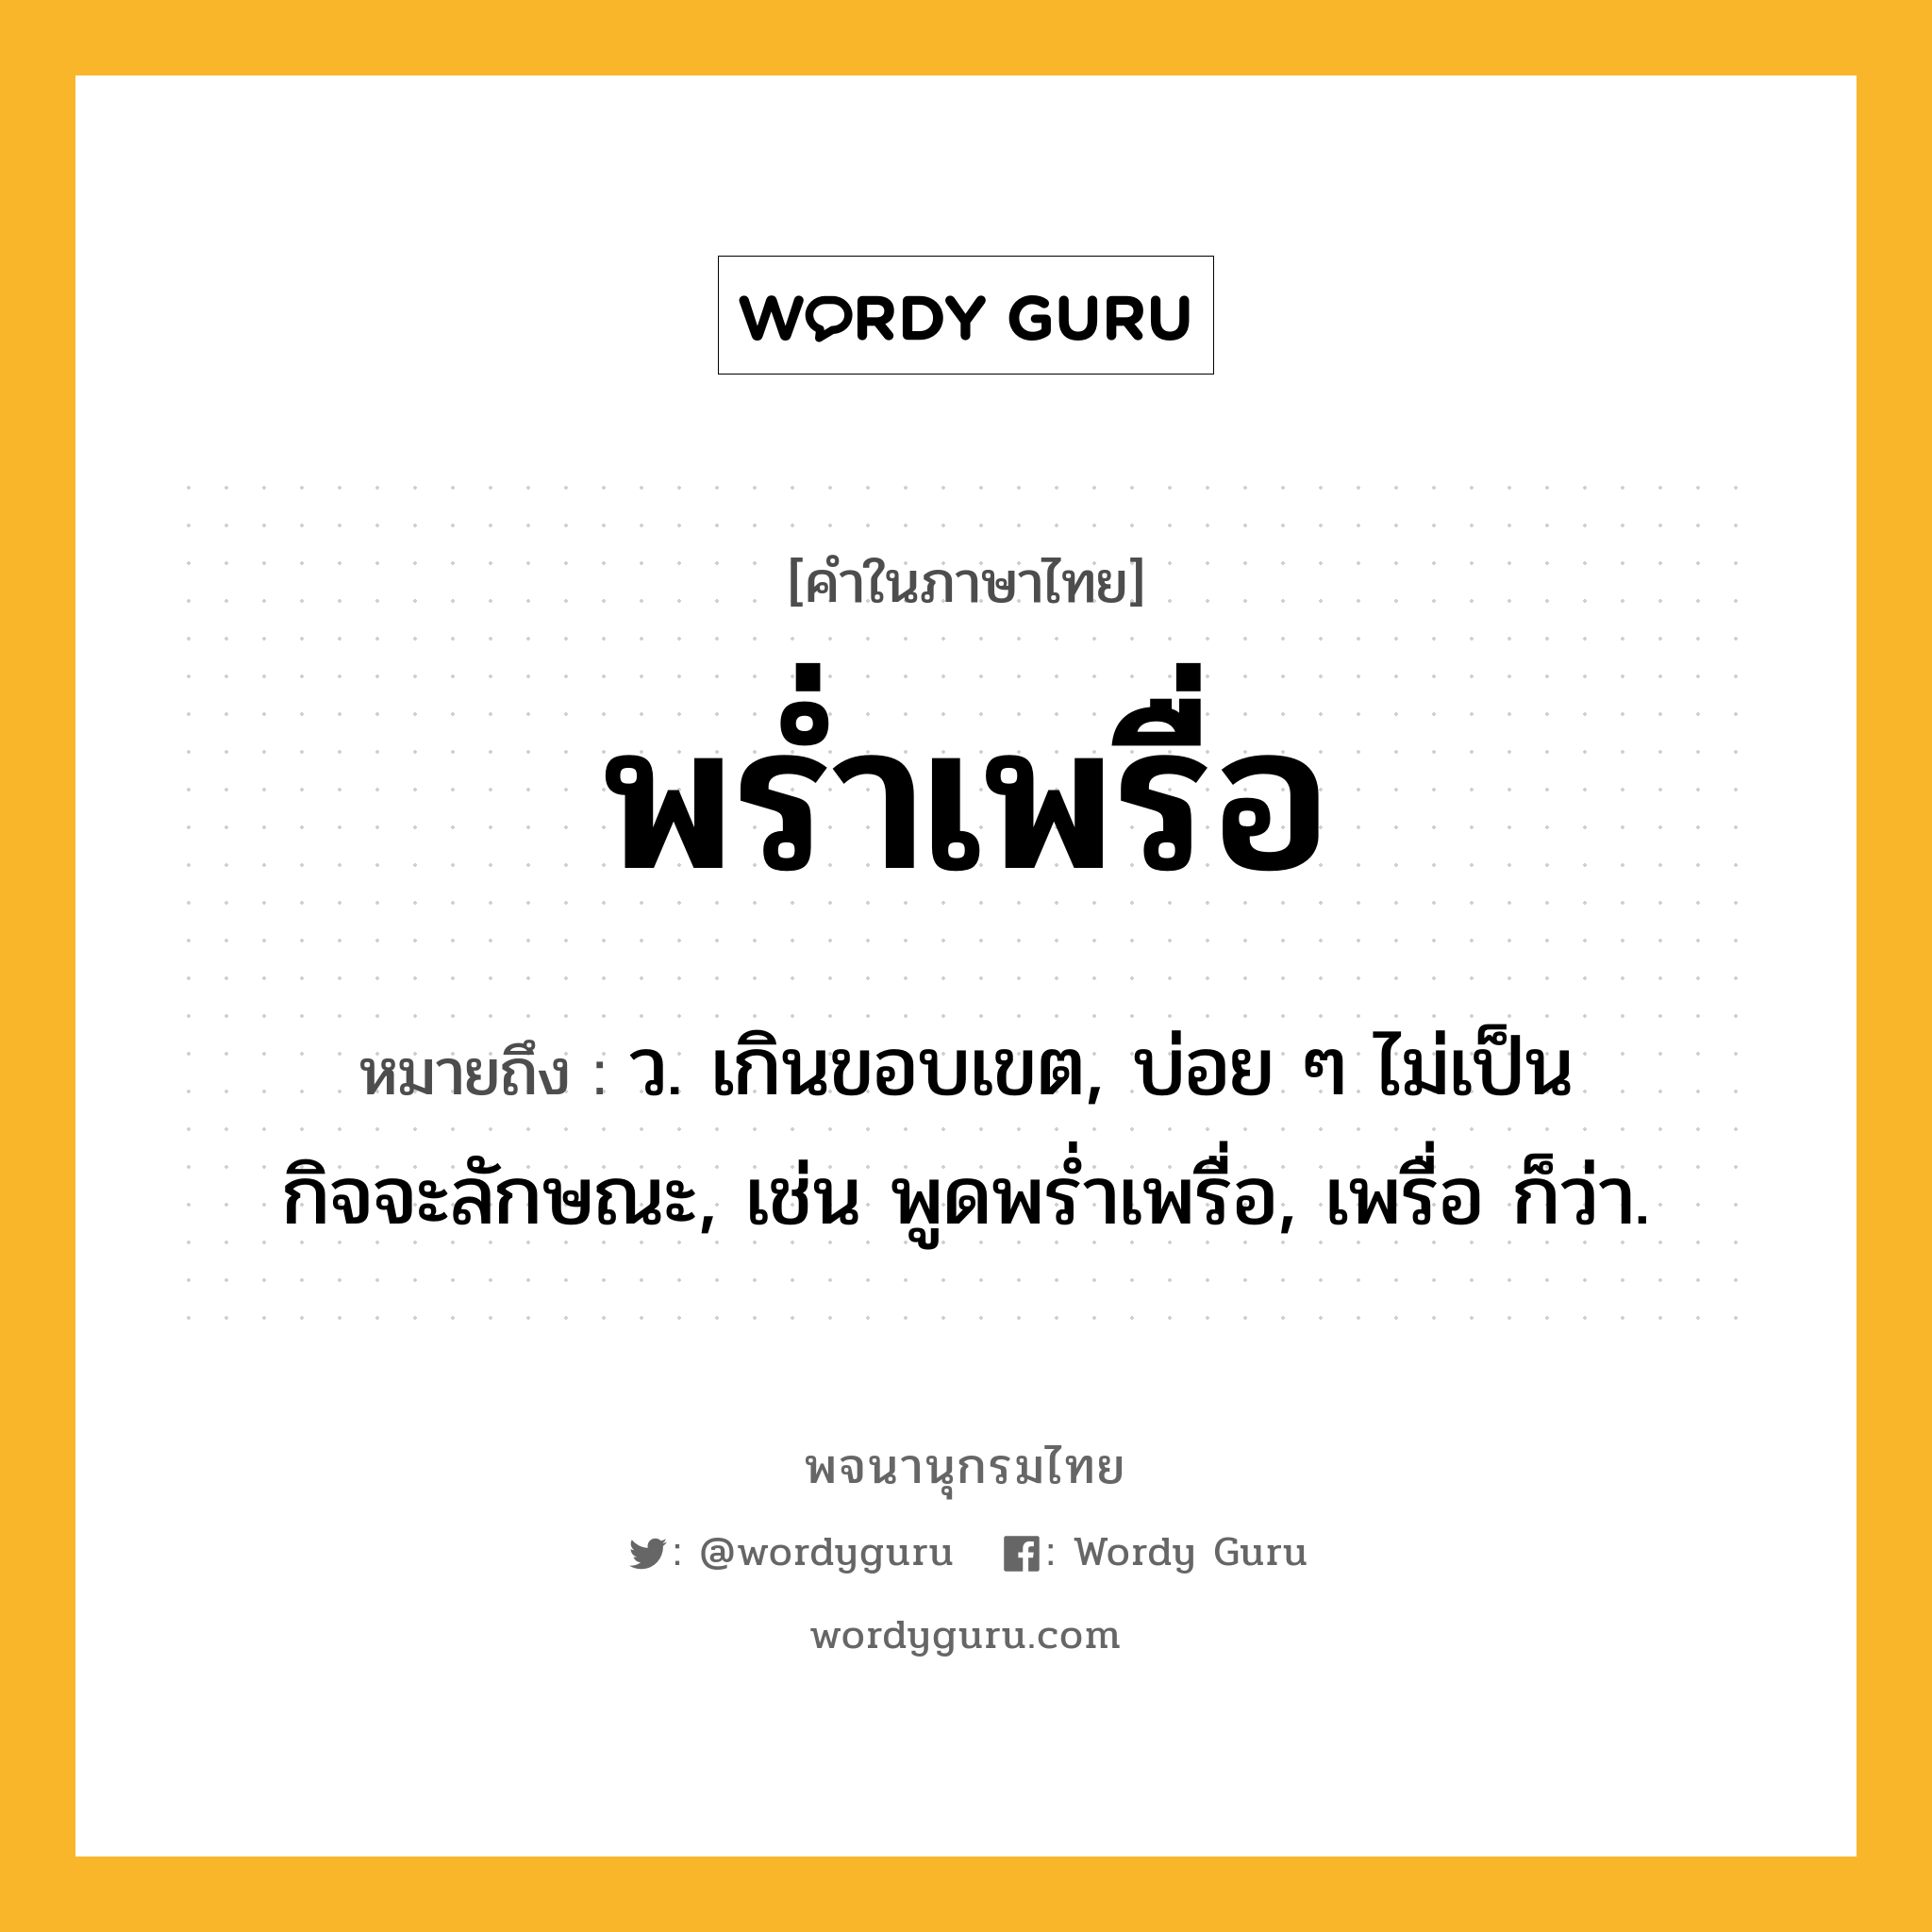 พร่ำเพรื่อ หมายถึงอะไร?, คำในภาษาไทย พร่ำเพรื่อ หมายถึง ว. เกินขอบเขต, บ่อย ๆ ไม่เป็นกิจจะลักษณะ, เช่น พูดพร่ำเพรื่อ, เพรื่อ ก็ว่า.